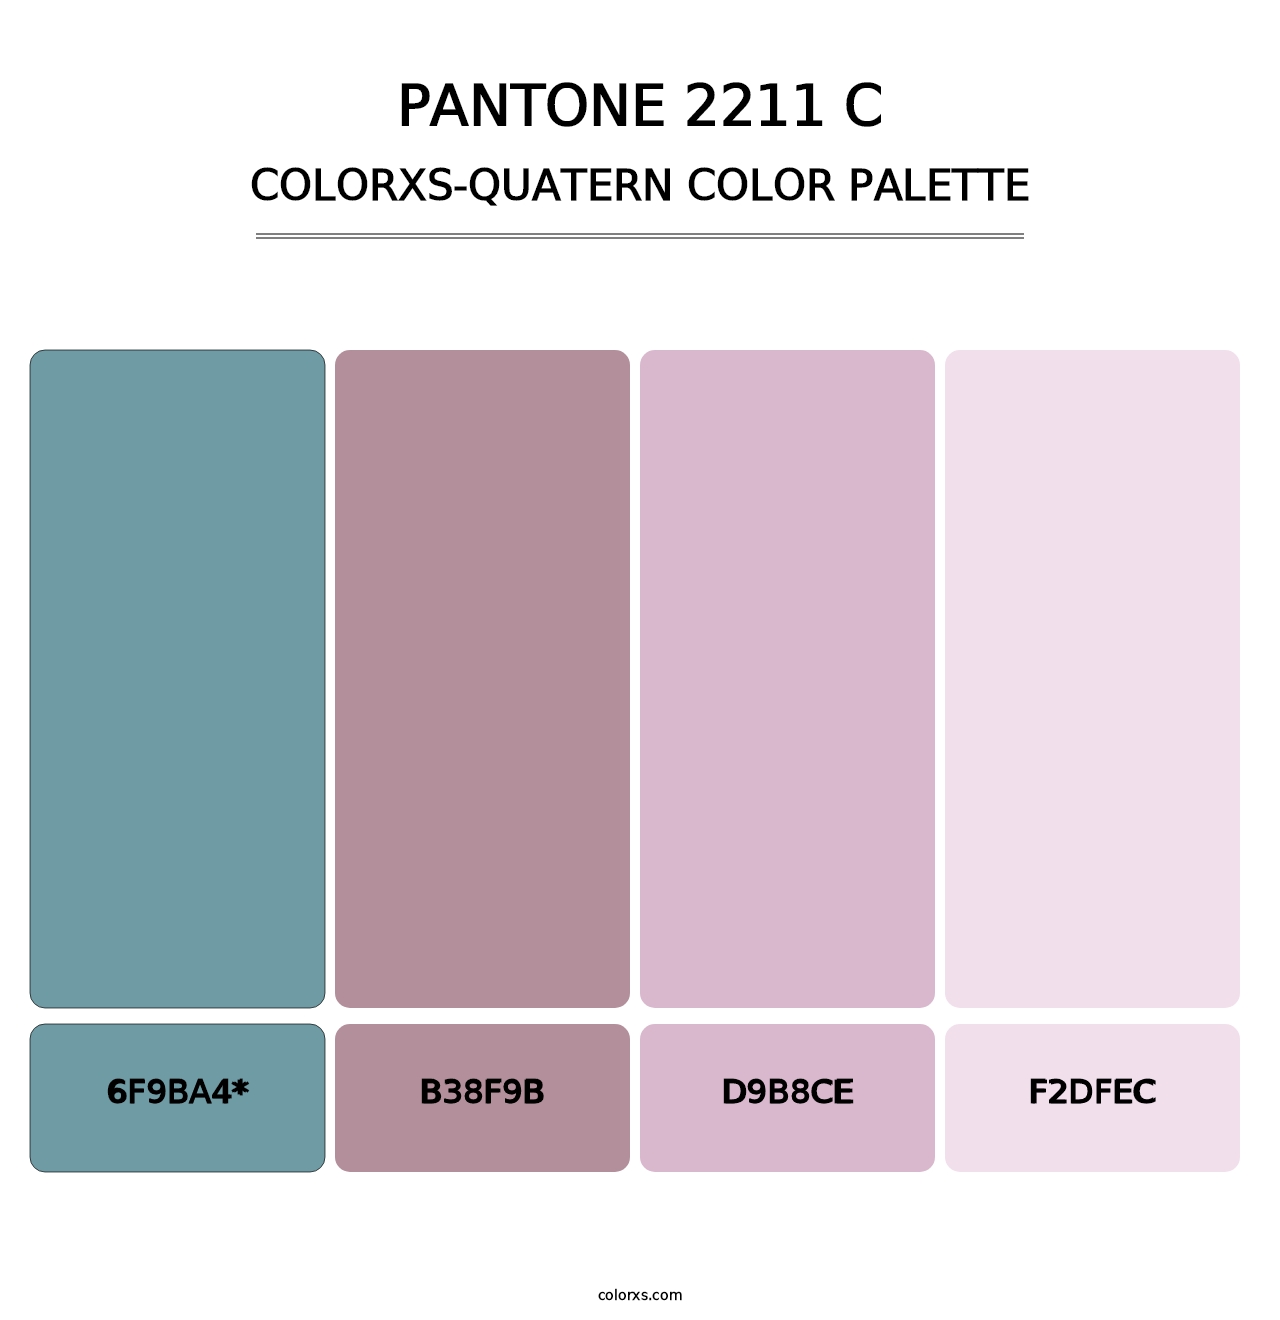 PANTONE 2211 C - Colorxs Quatern Palette